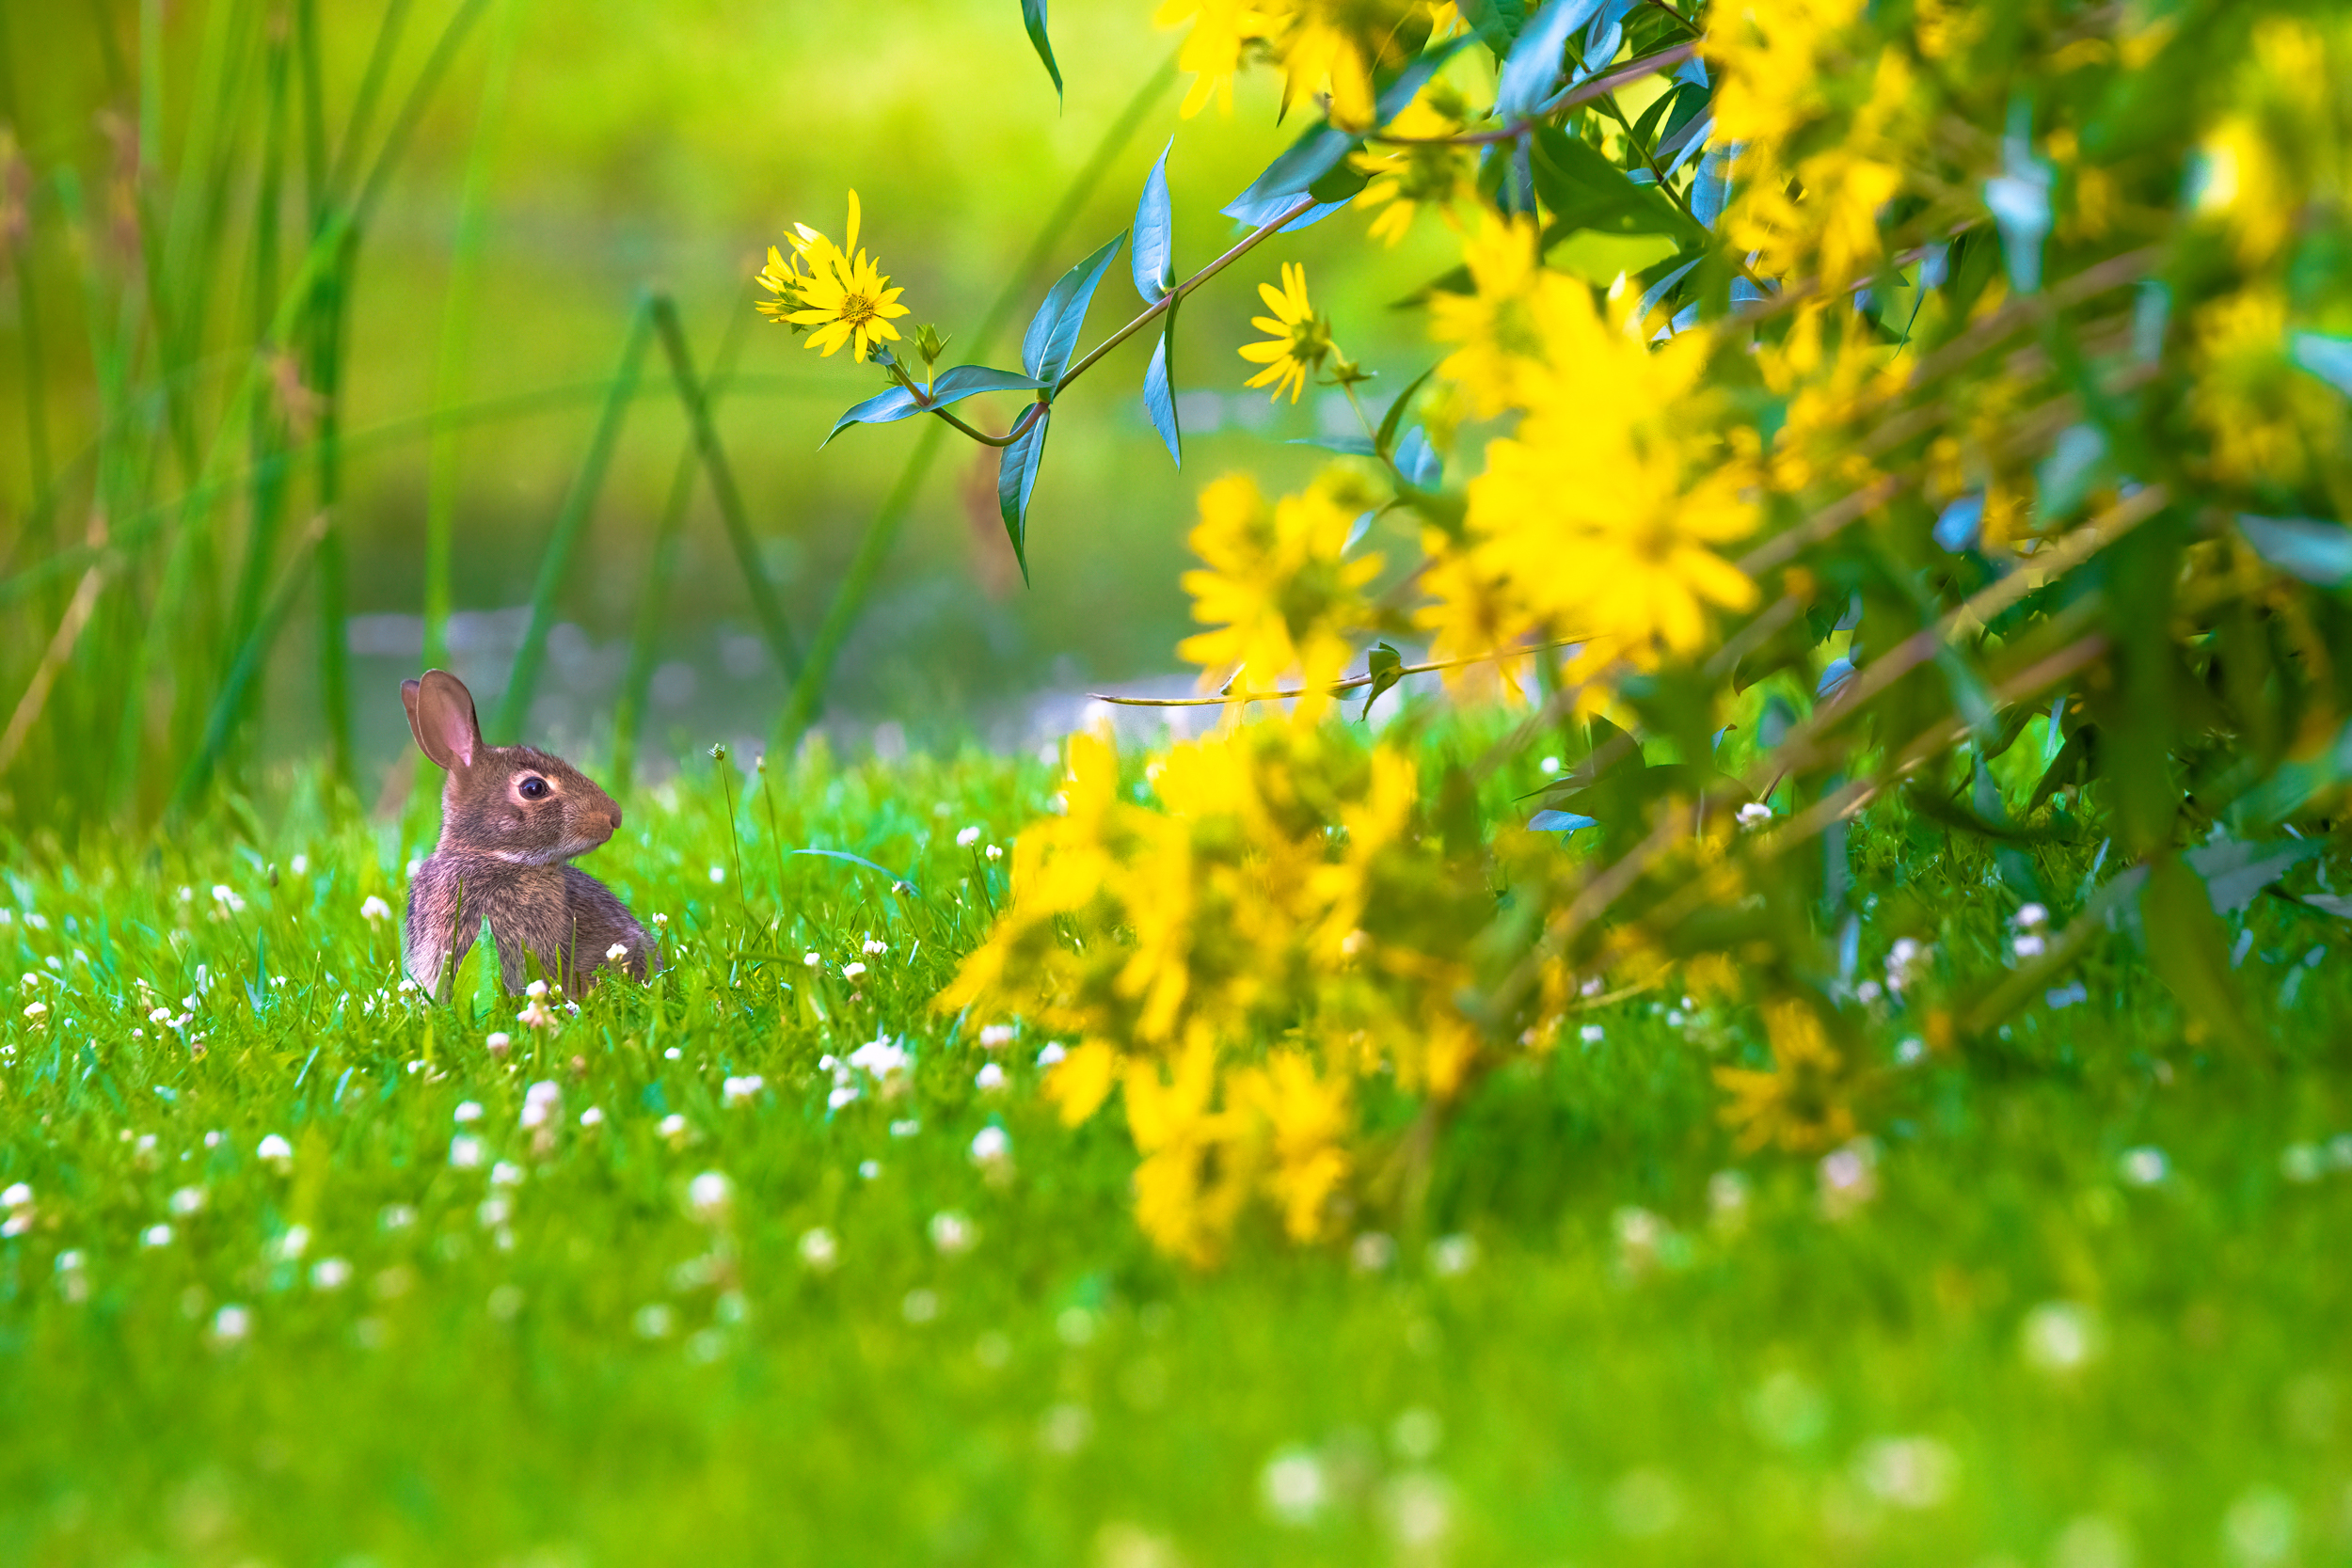 A rabbit enjoying fresh grass by a lake